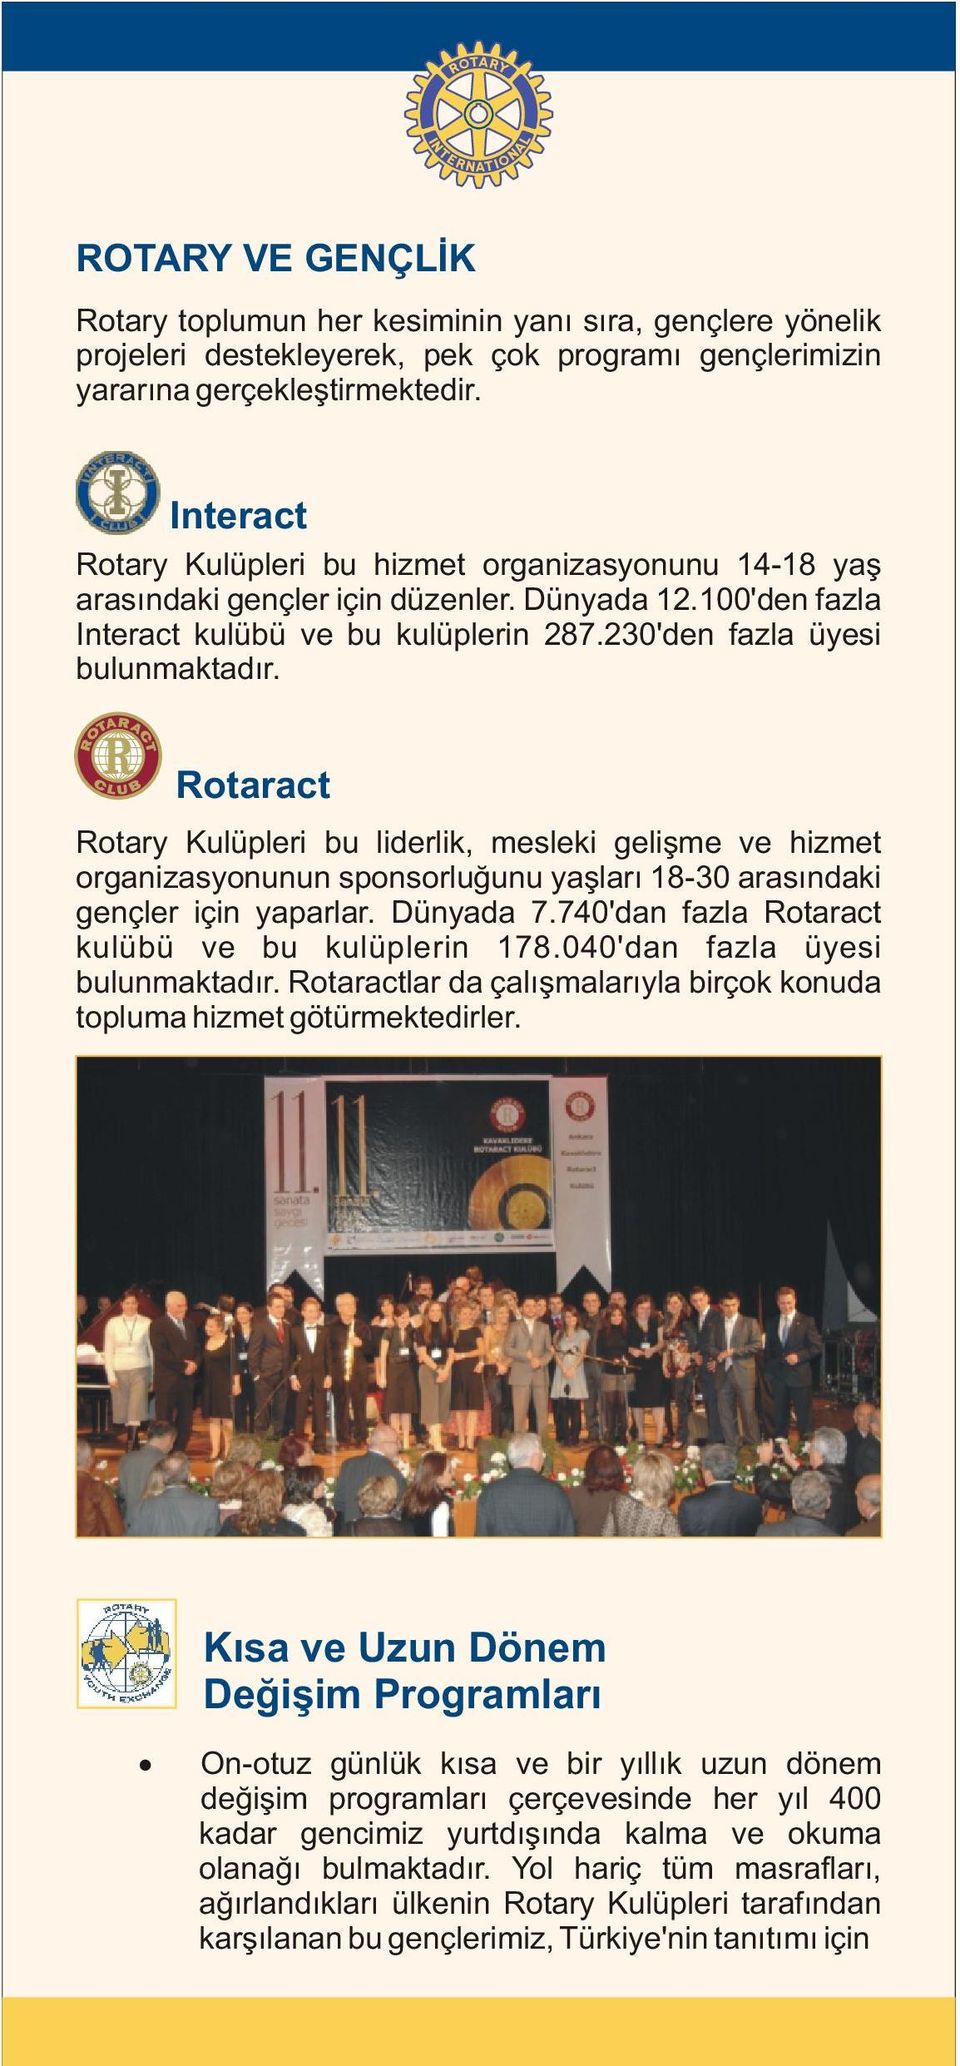 Rotaract Rotary Kulüpleri bu liderlik, mesleki geliþme ve hizmet organizasyonunun sponsorluðunu yaþlarý 18-30 arasýndaki gençler için yaparlar. Dünyada 7.